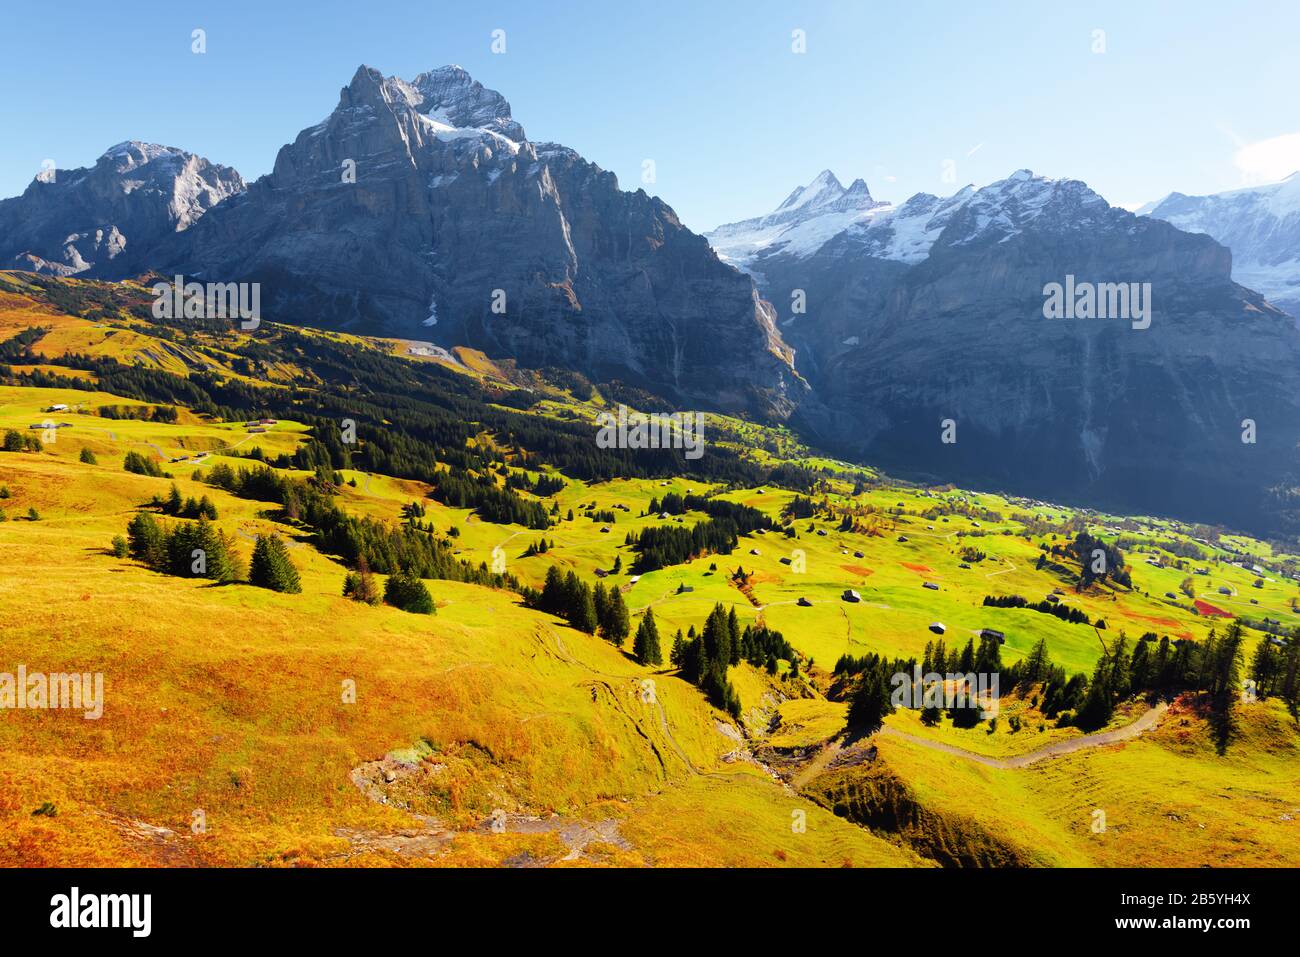 Paysage d'automne pittoresque avec prairie verte et montagnes enneigées bleues dans le village de Grindelwald dans les Alpes suisses Banque D'Images